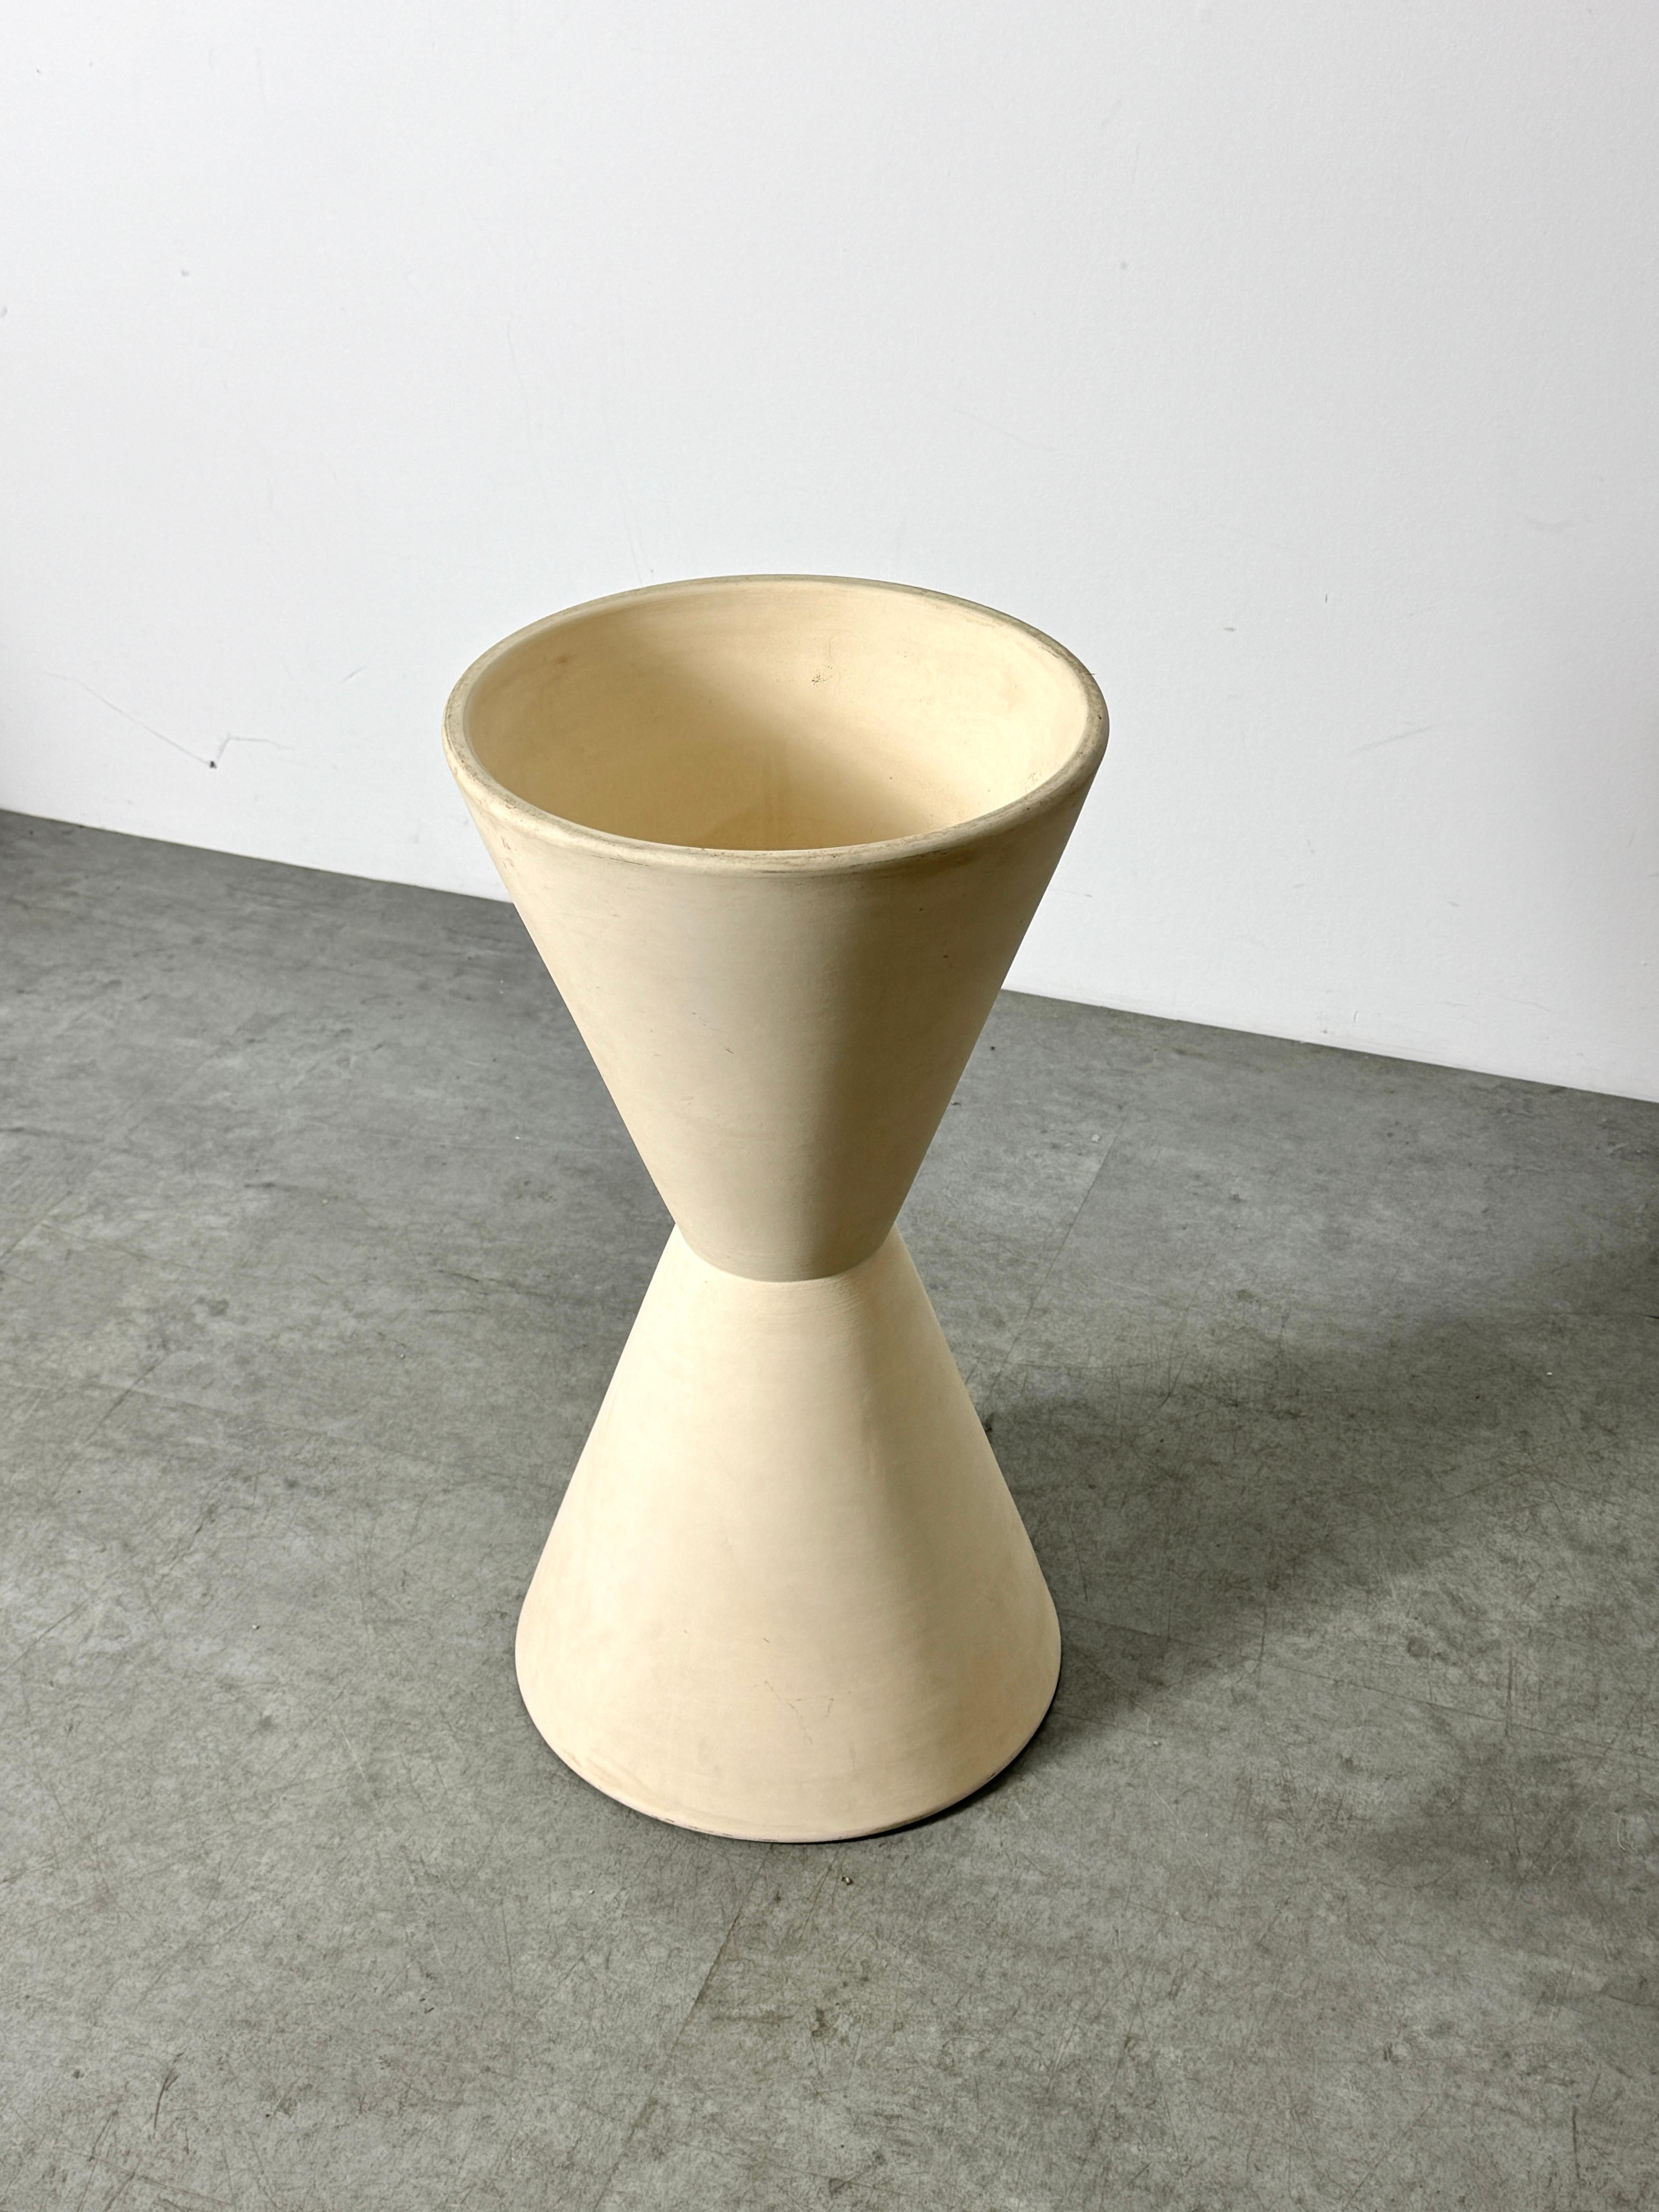 American Lagardo Tackett Double Cone Architectural Pottery Planter Bisque Ceramic 1950s For Sale